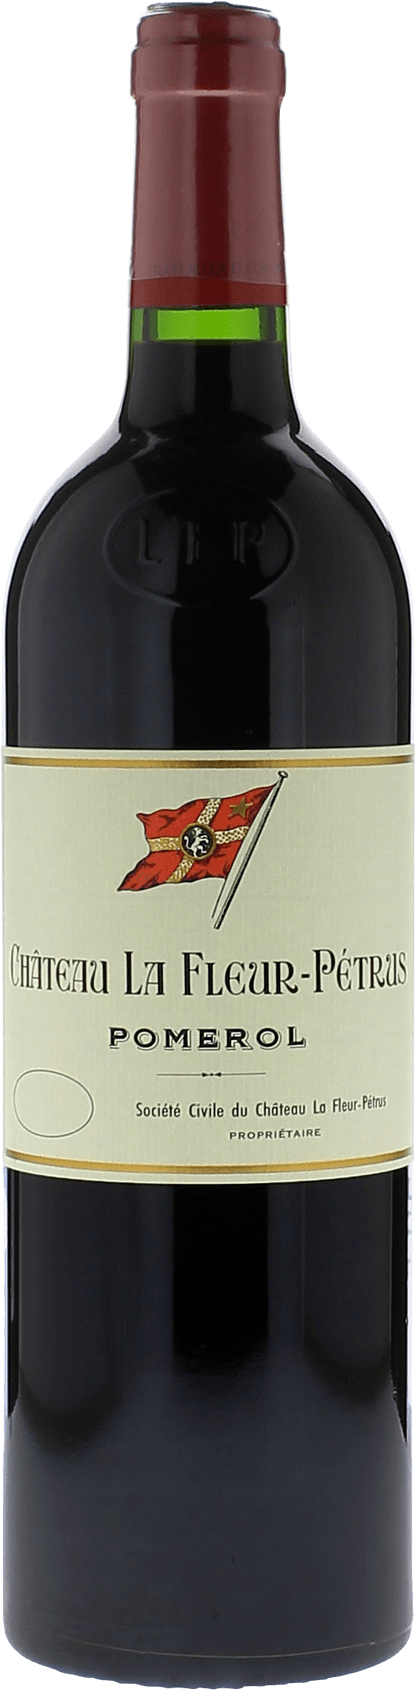 La fleur petrus 2006  Pomerol, Bordeaux rouge